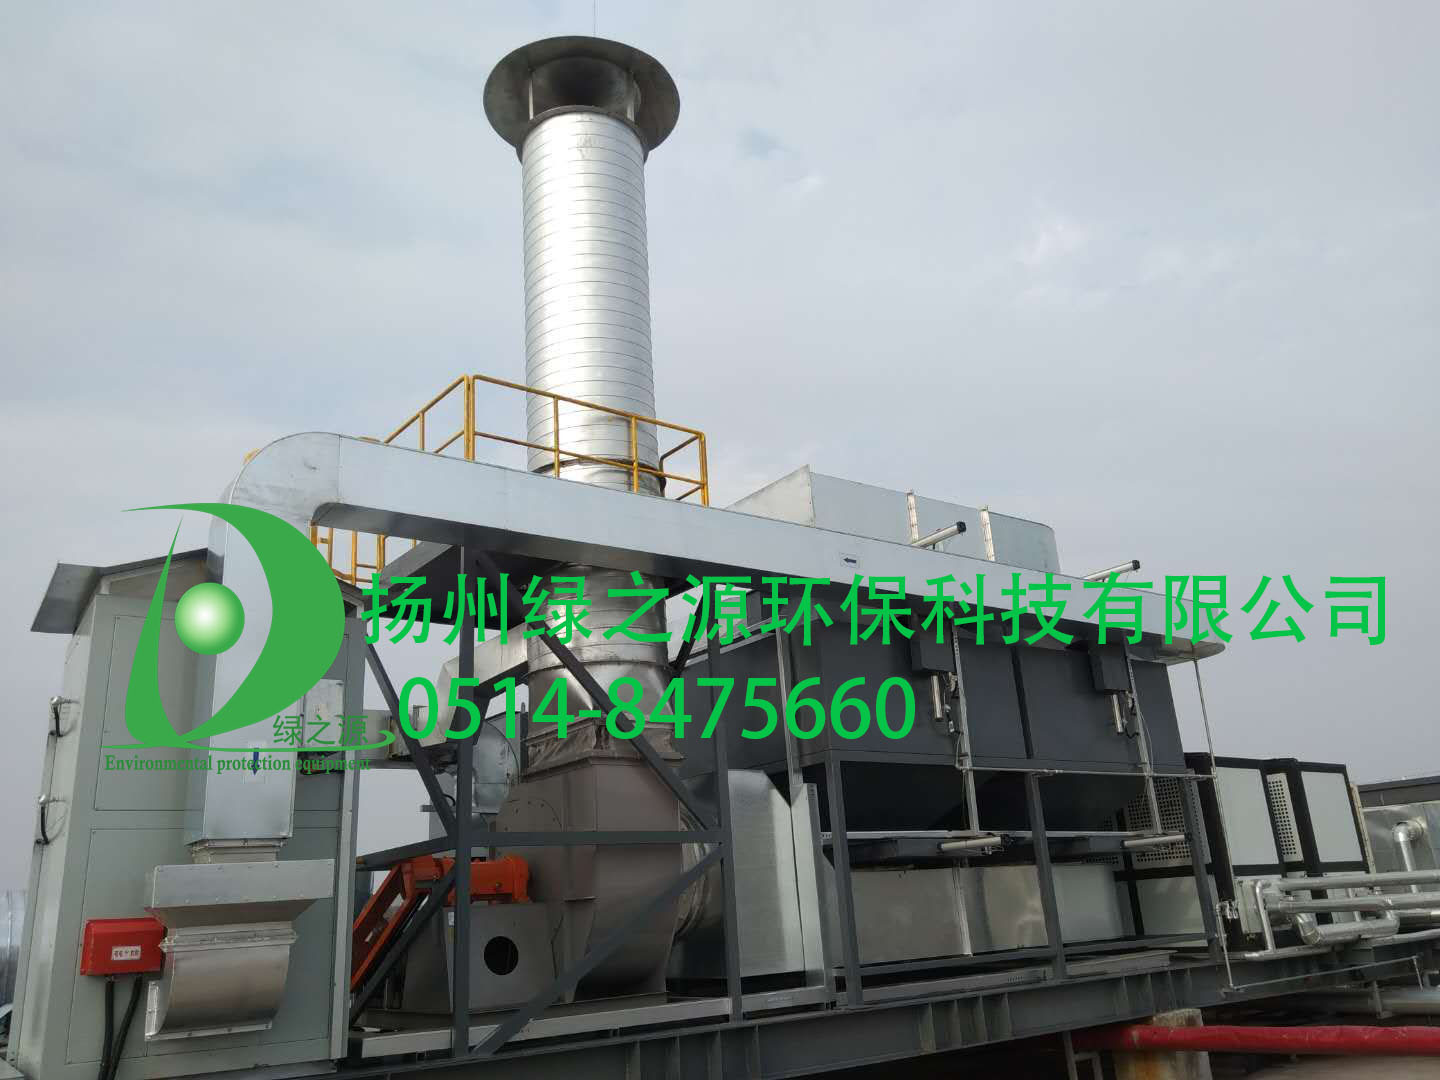 【扬州绿之源环保】工业生产挥发有机废气治理技术的分析